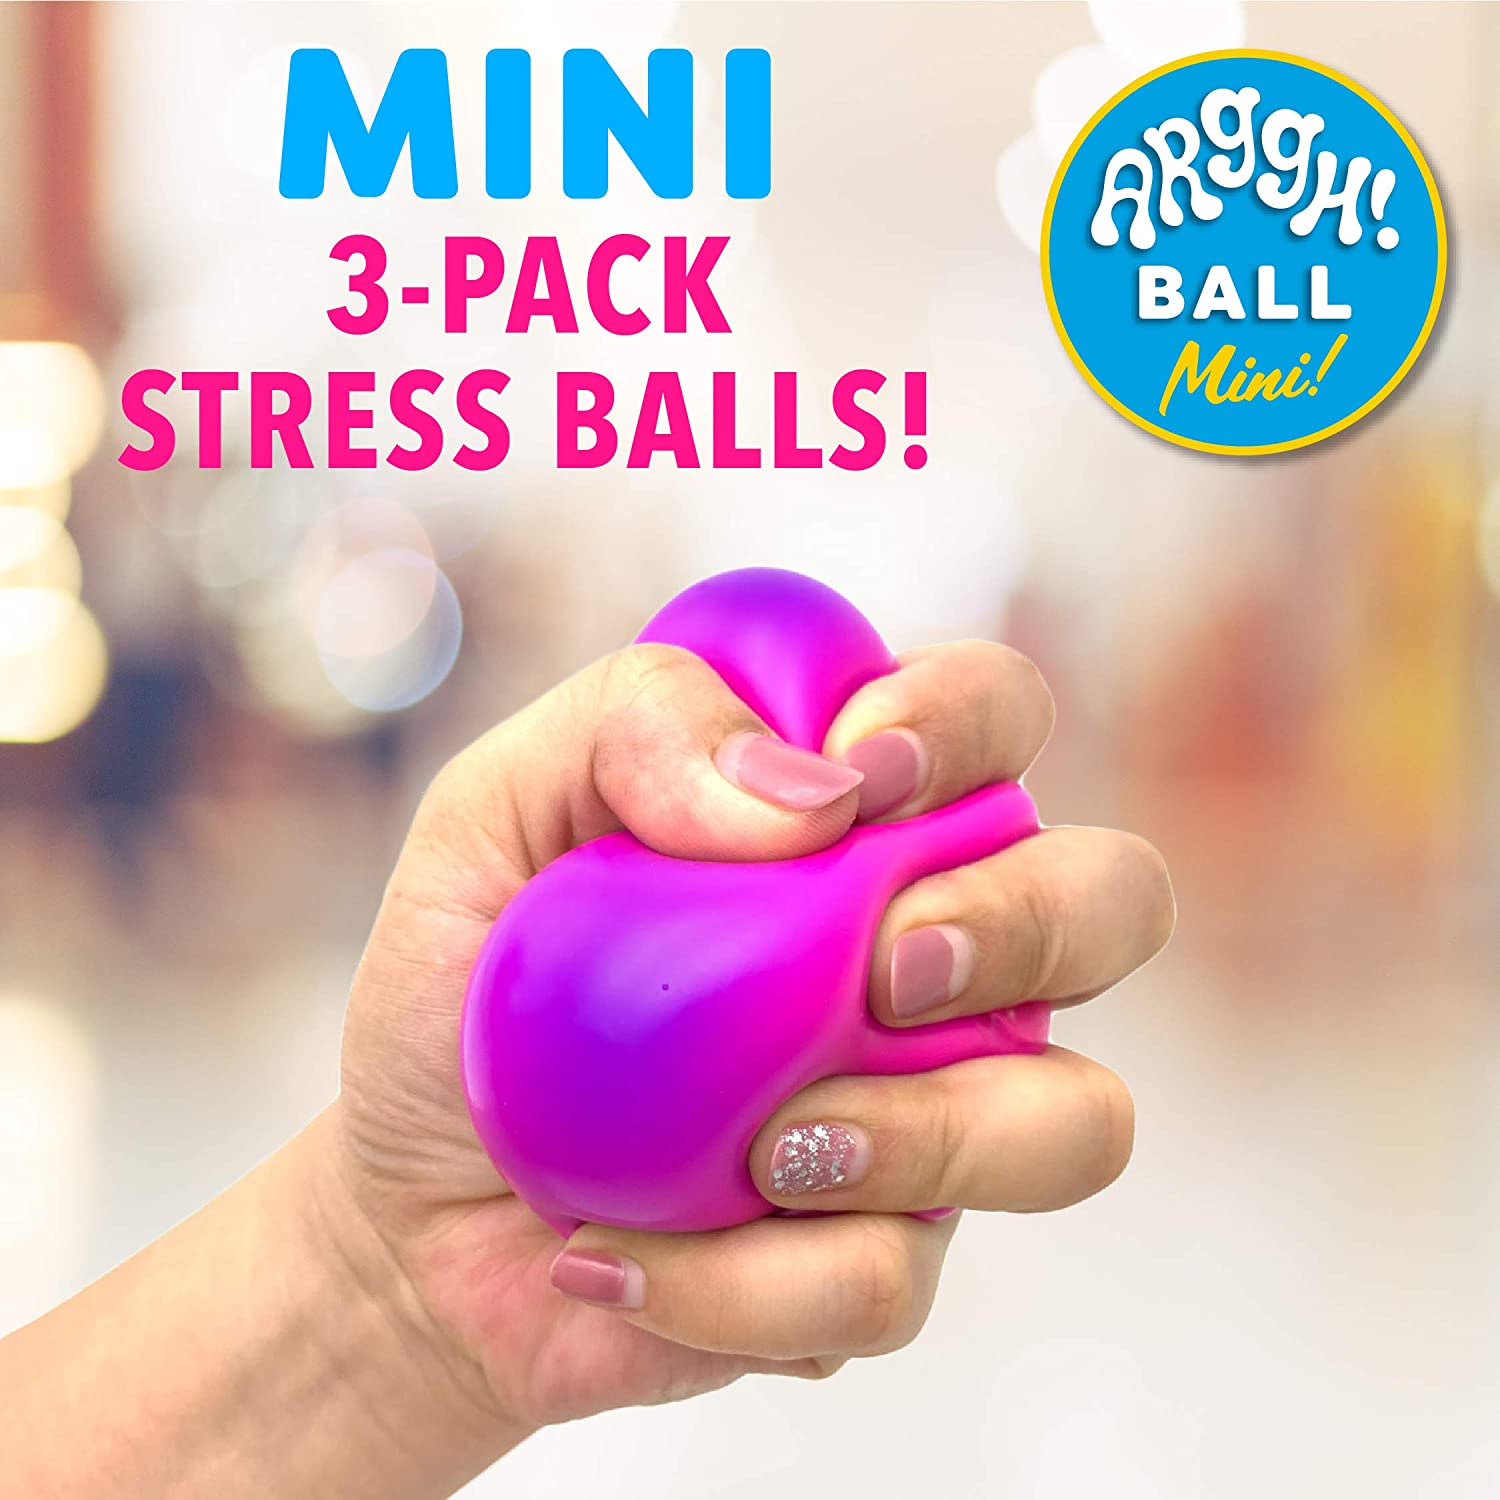 Power Your Fun Arggh! Ball Mini! 3-Pack